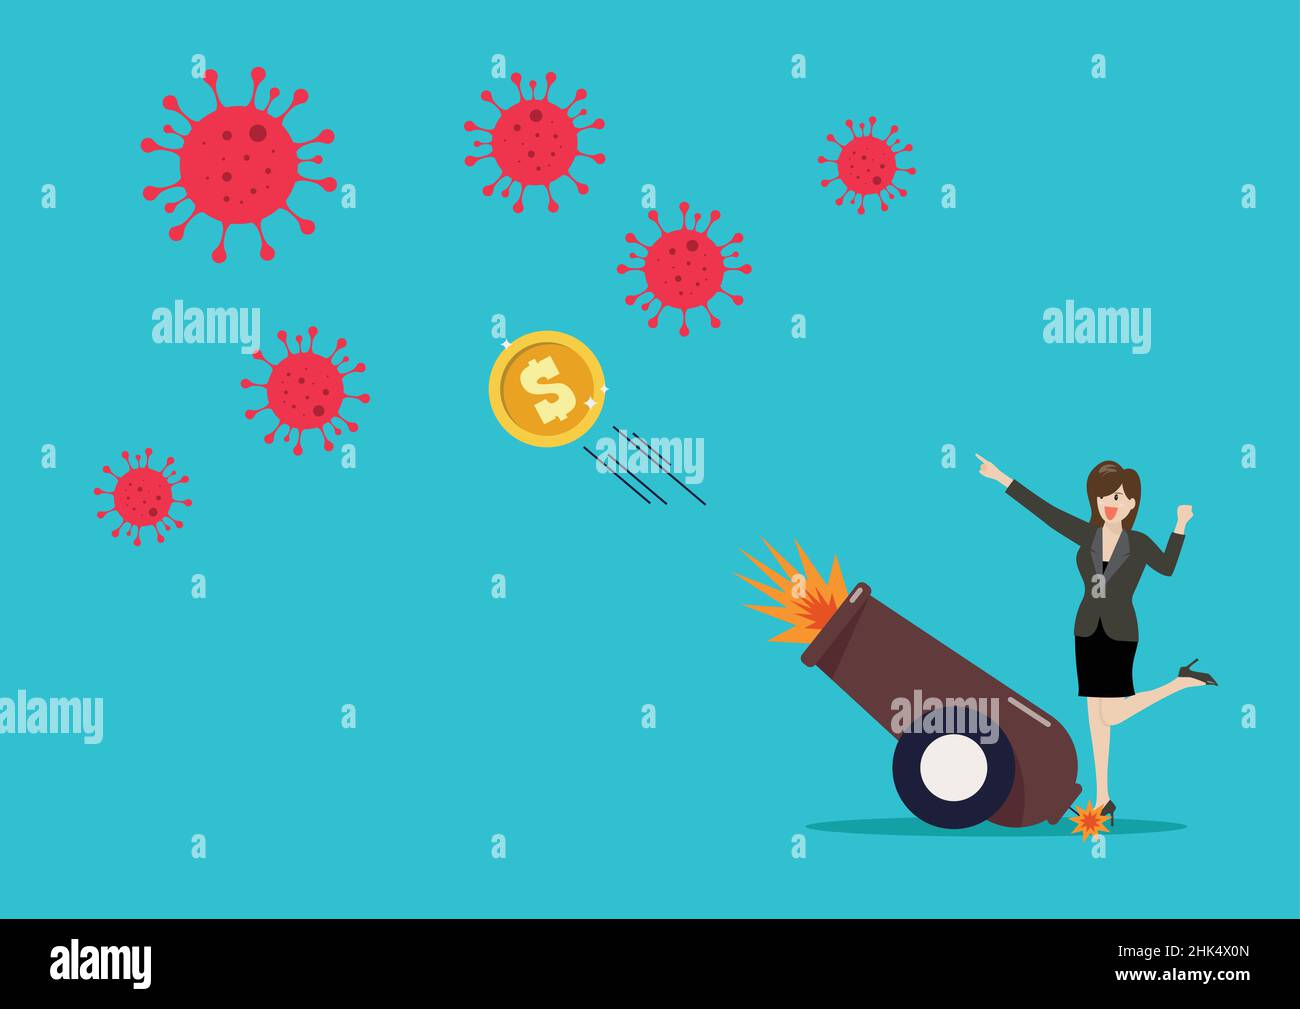 Femme d'affaires luttant contre le coronavirus par l'argent tiré d'un canon explosif.Illustration vectorielle.Concept de vaccination COVID-19. Illustration de Vecteur